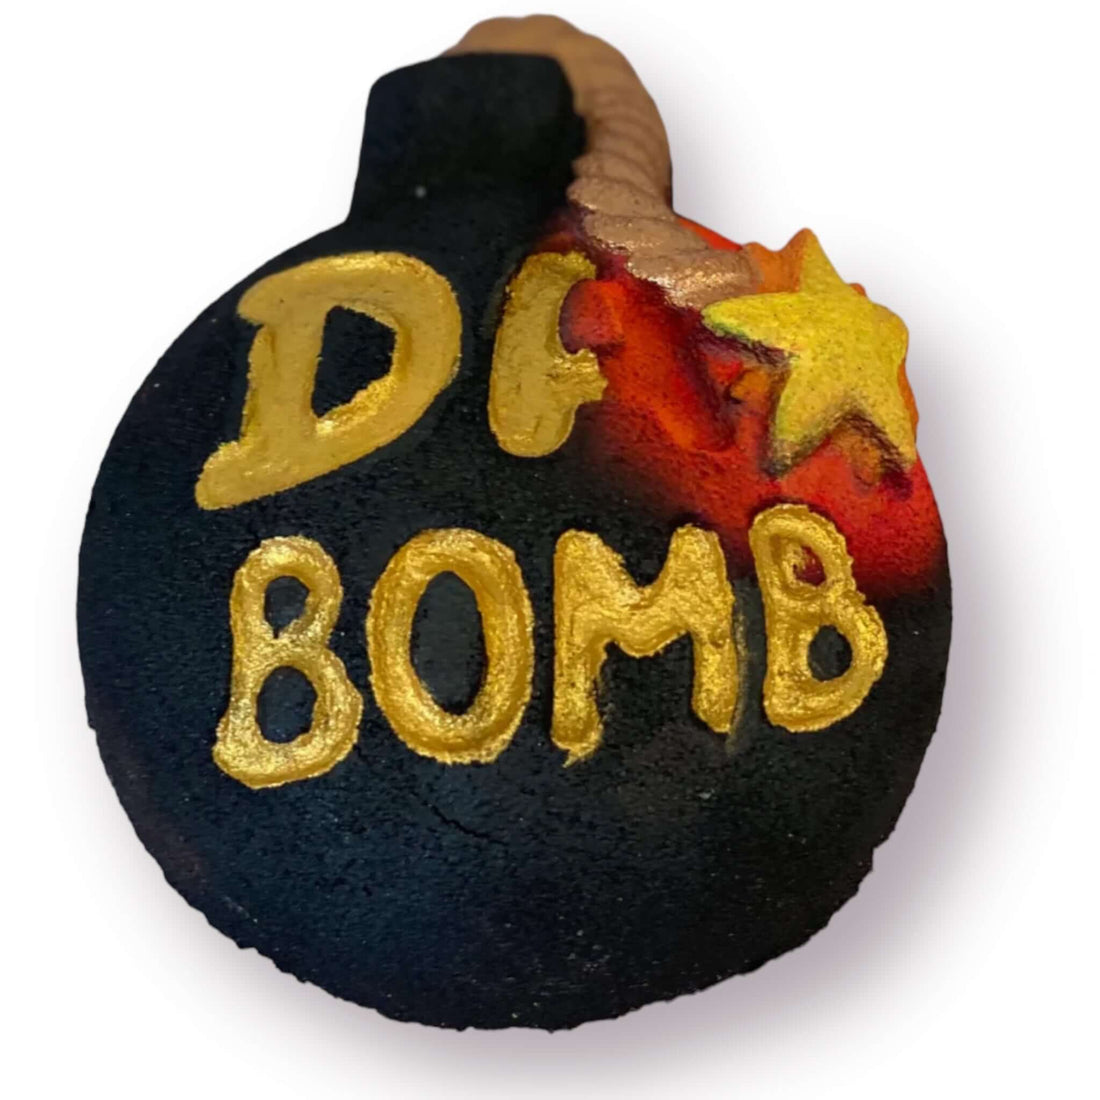 A Bomb Bath Bomb